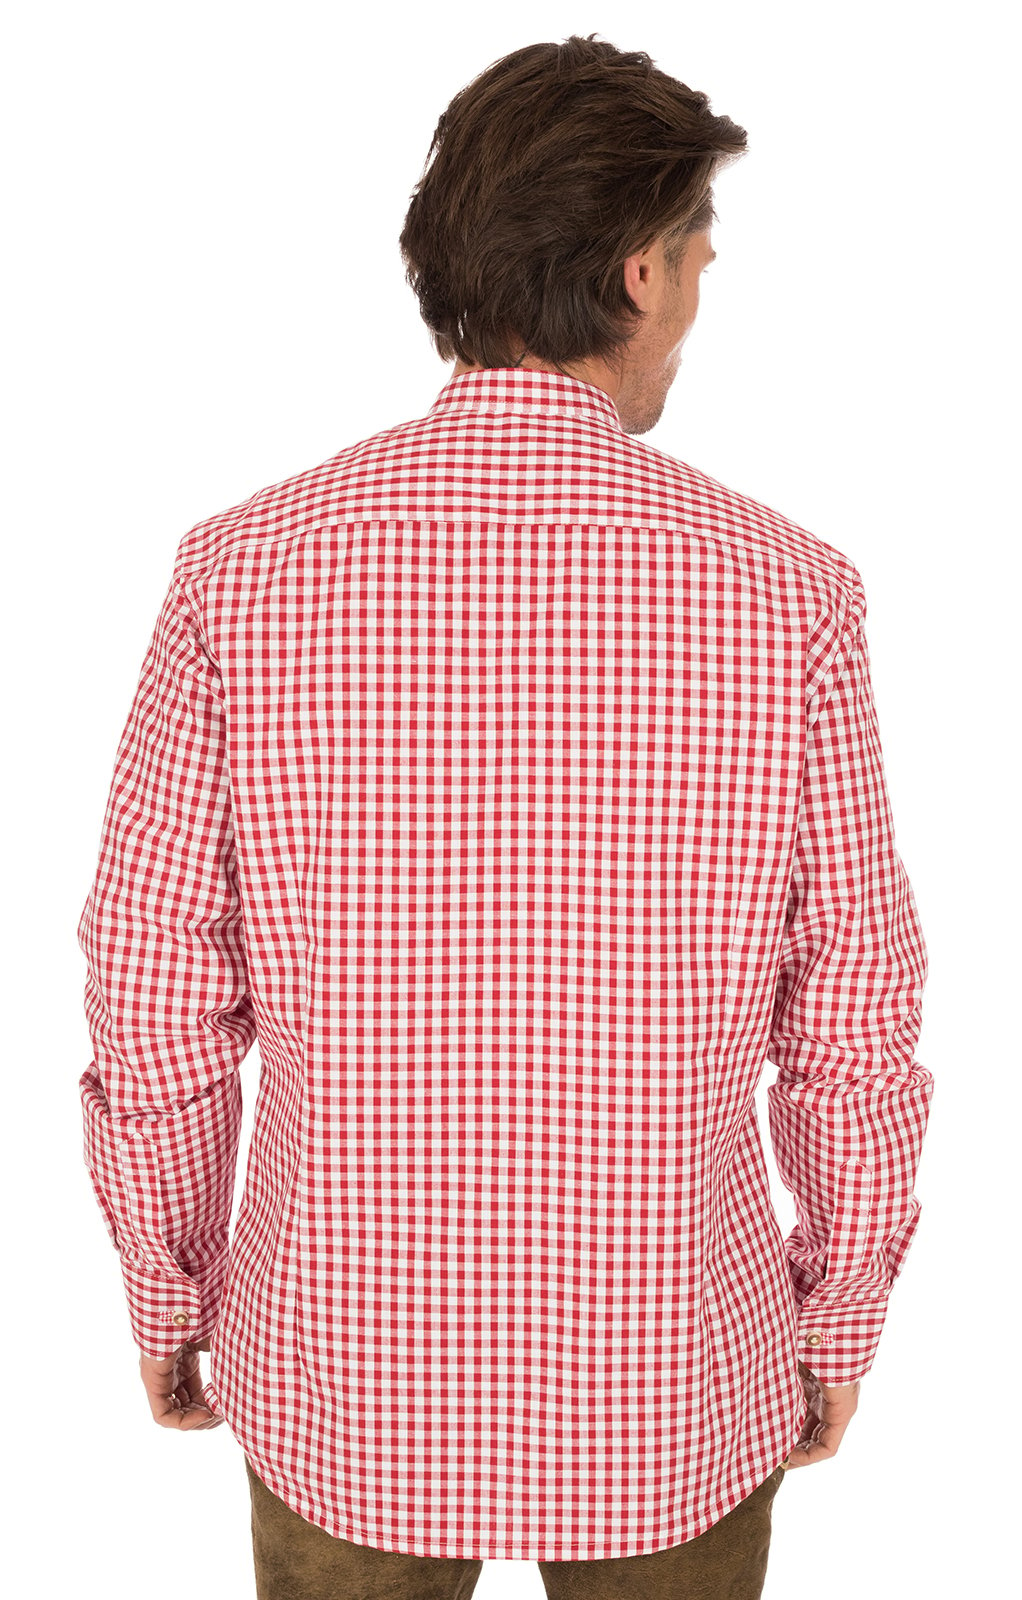 weitere Bilder von German traditional shirt Pfoad red